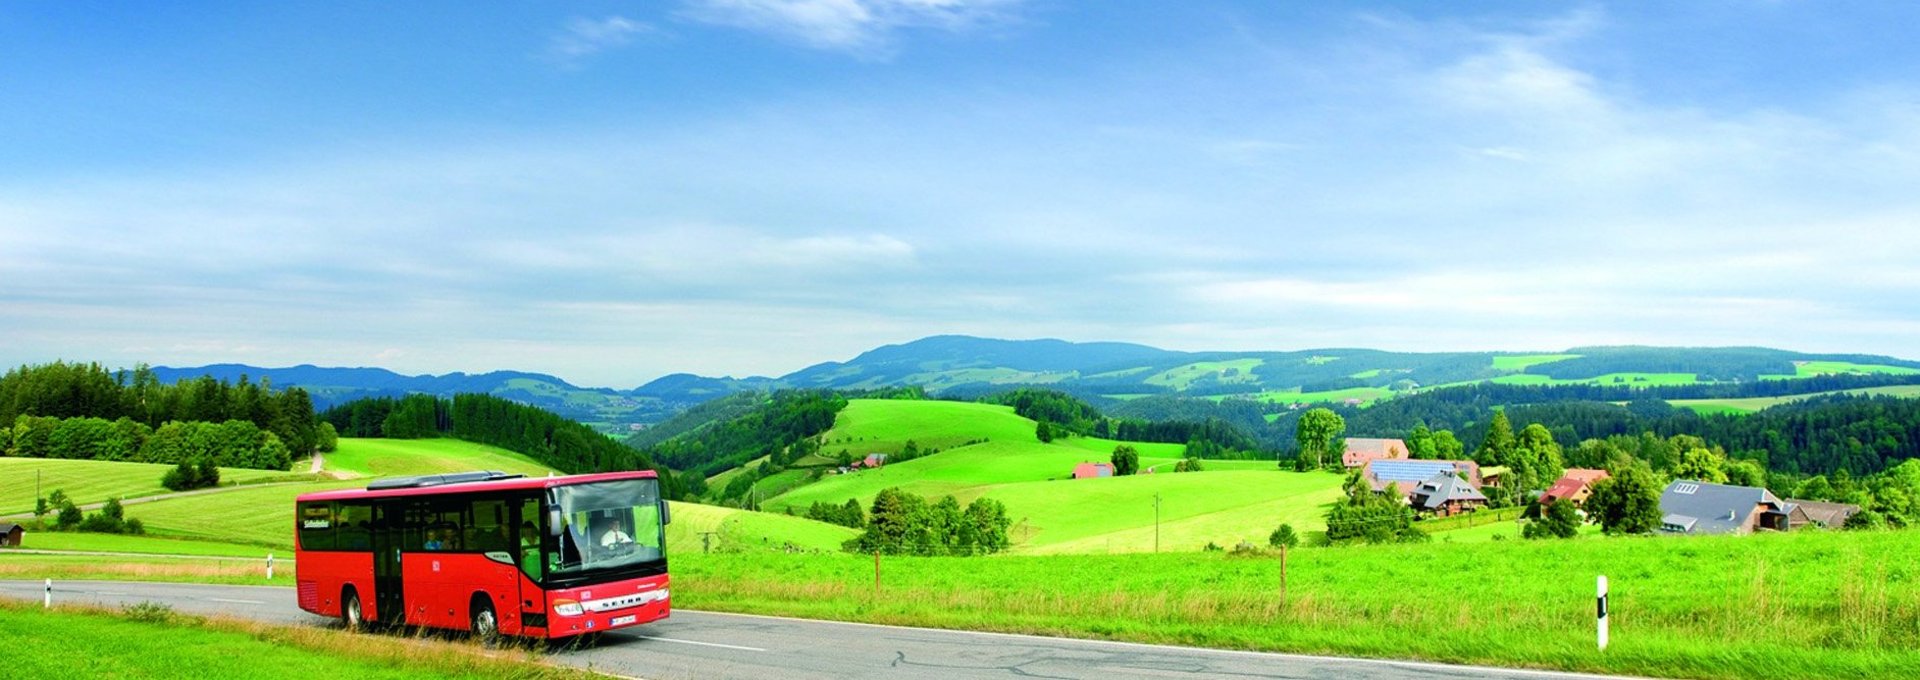 Roter Freizeitbus in der Landschaft des Landkreises Waldshut